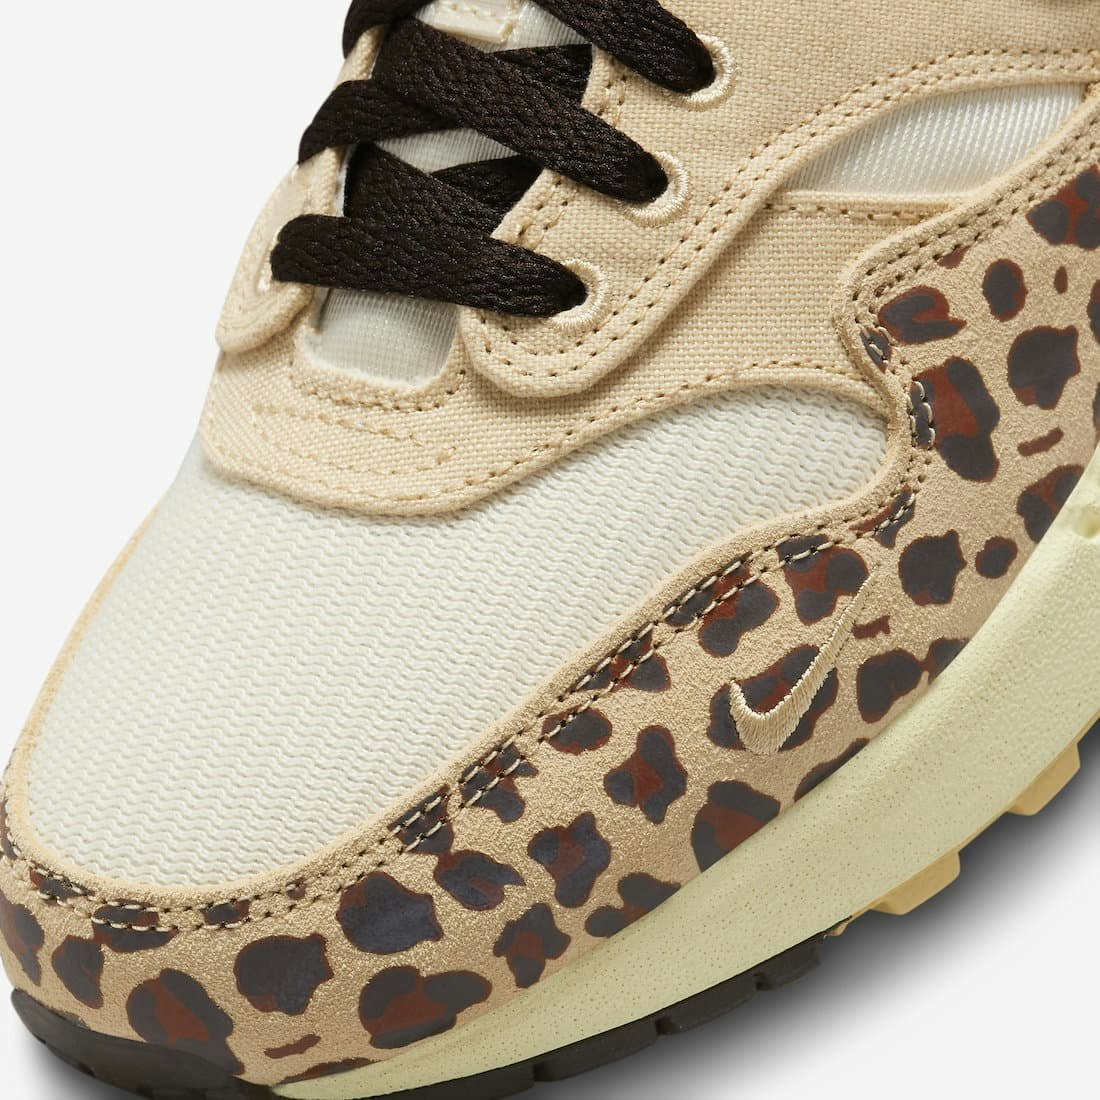 Nike Air Max 1 ’87 "Leopard"